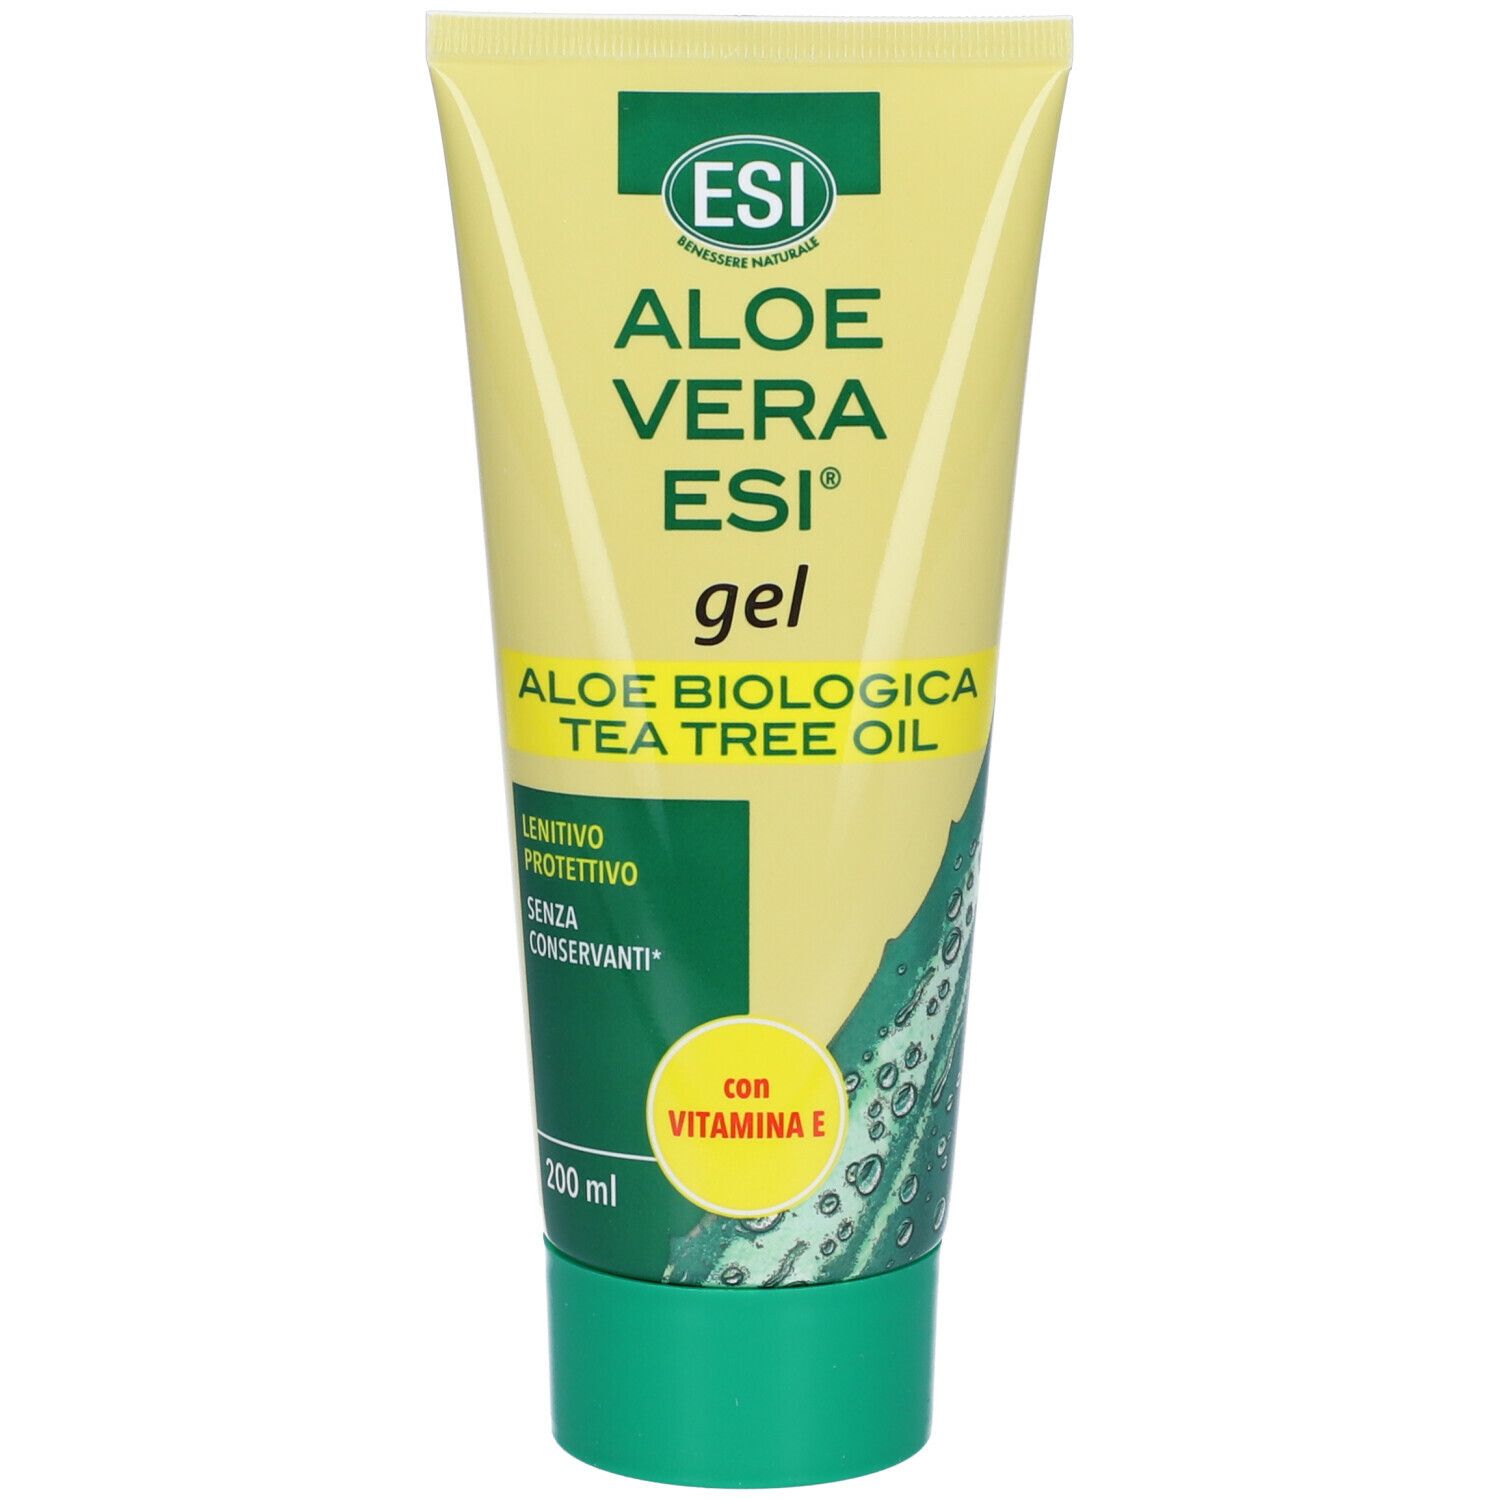 ESI Aloe Vera Gel con Vitamina E + Tea Tree Oil